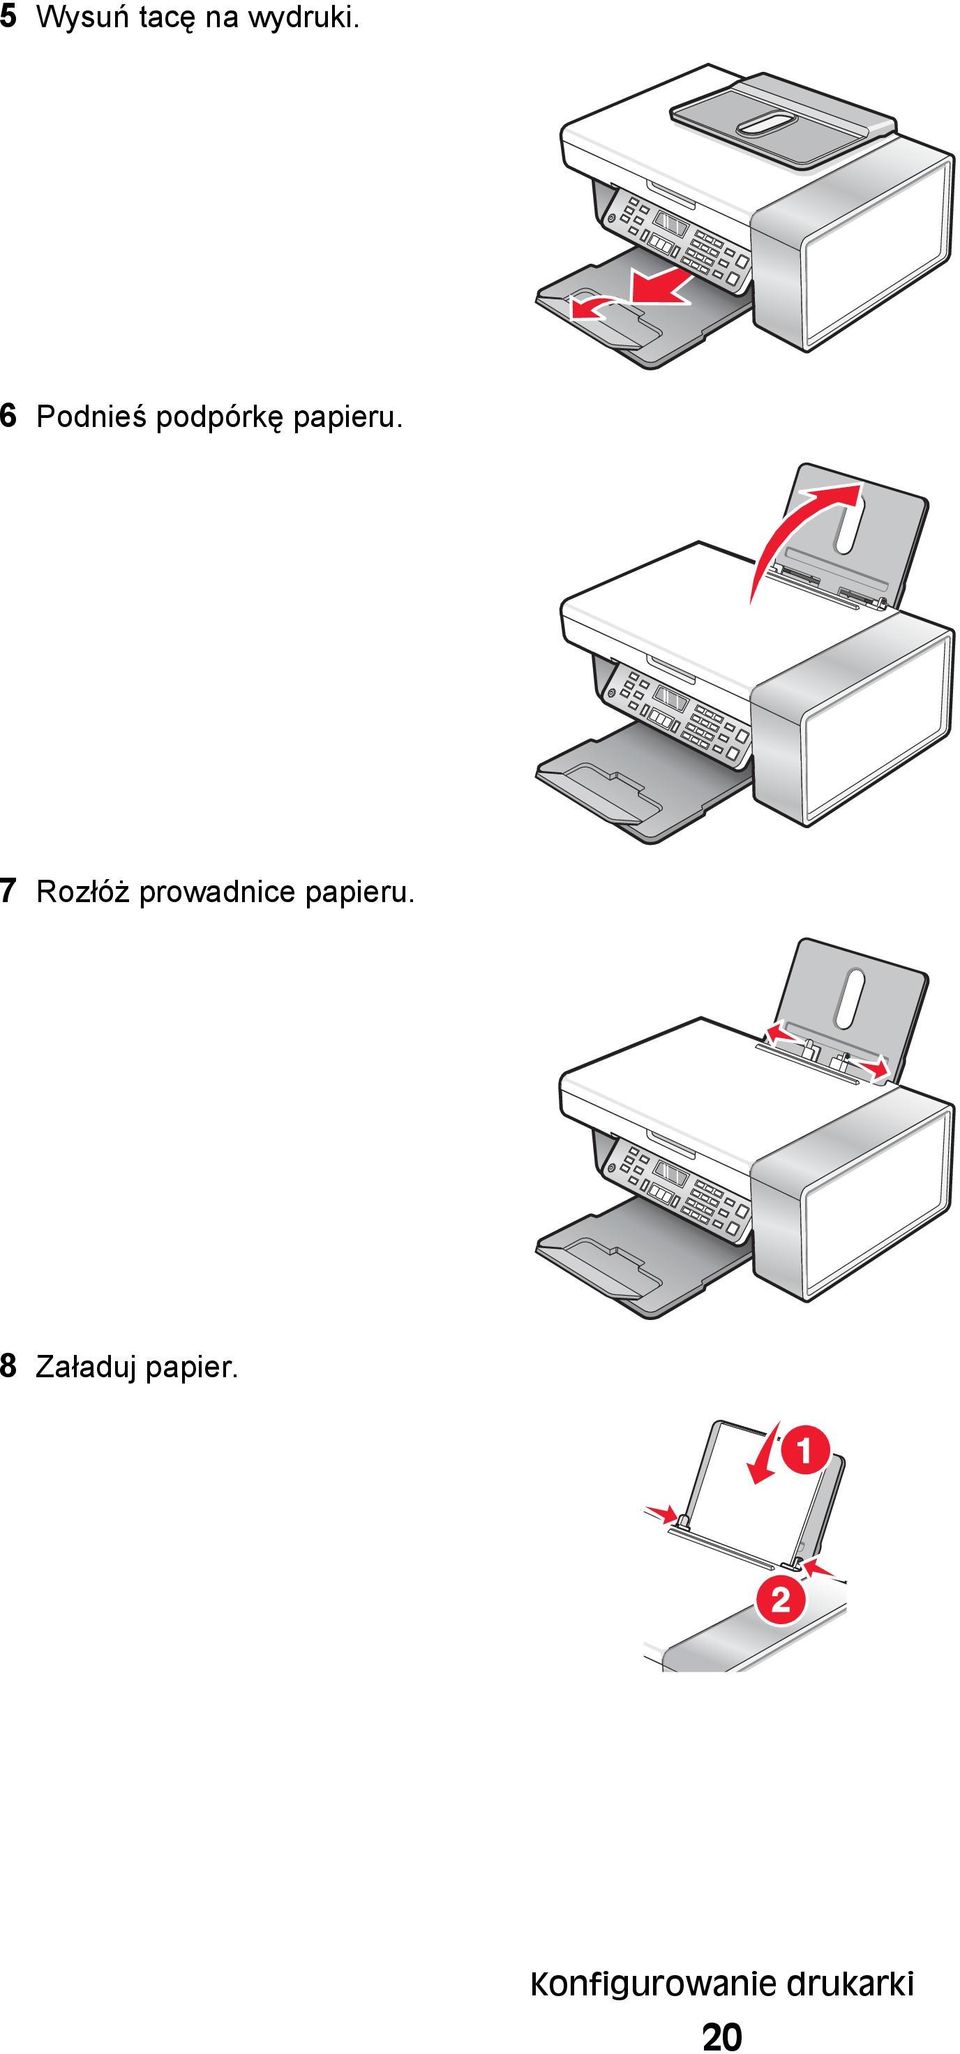 7 Rozłóż prowadnice papieru.